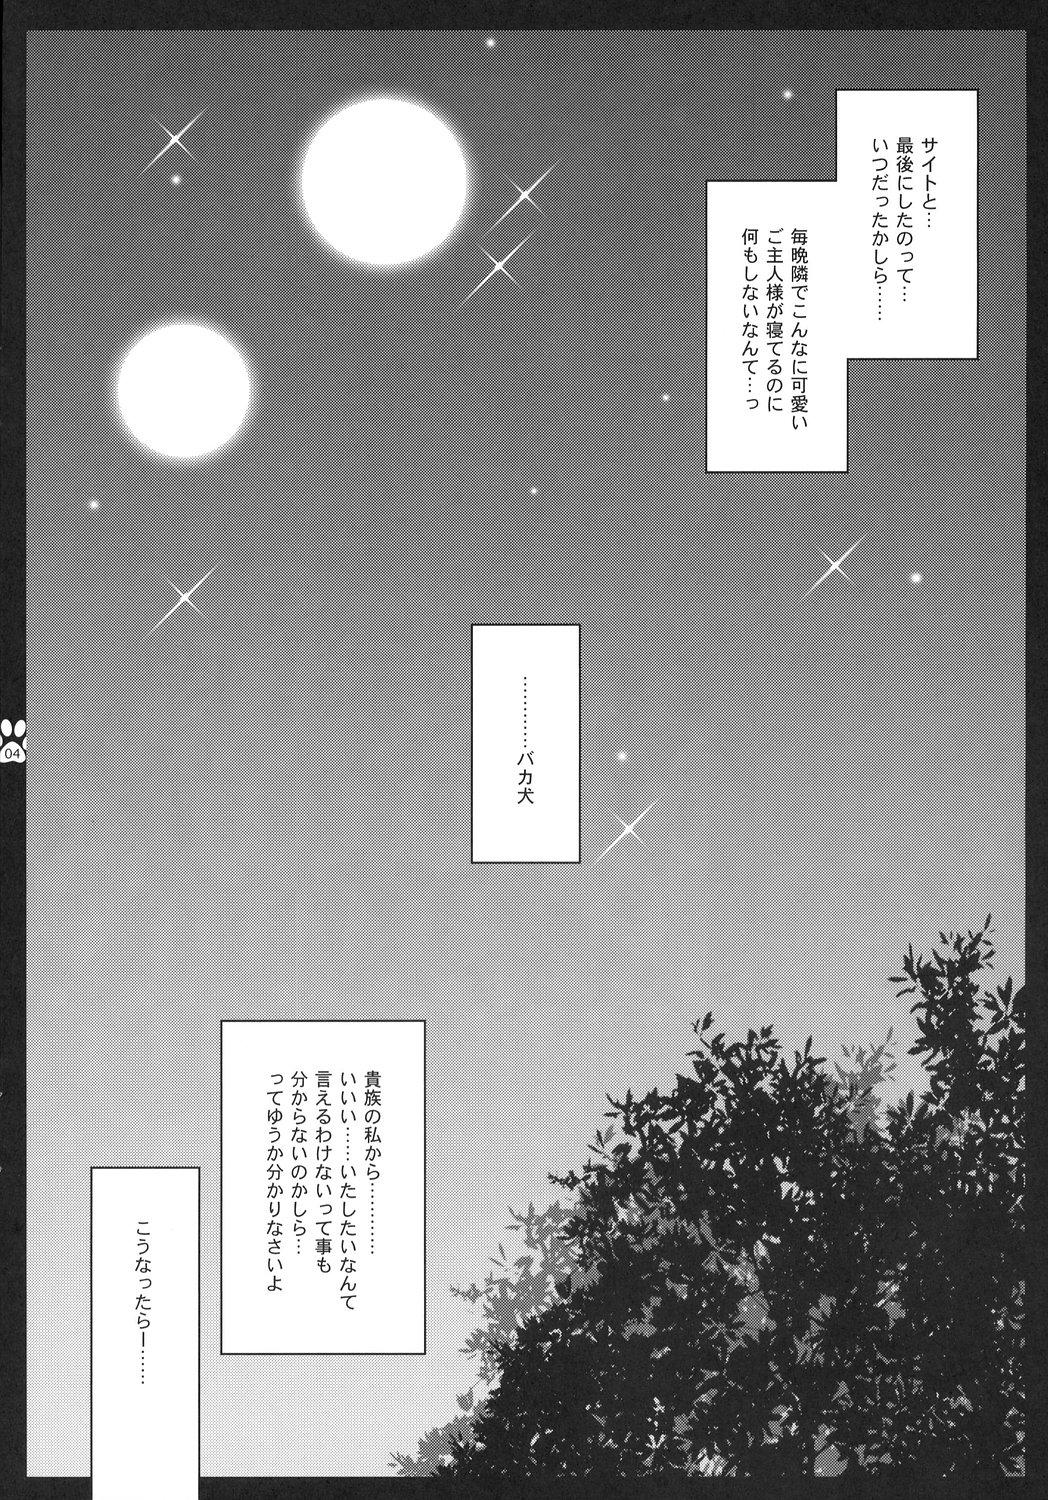 Friends Sunao Sukitteii Nasai! - Zero no tsukaima Fishnet - Page 3